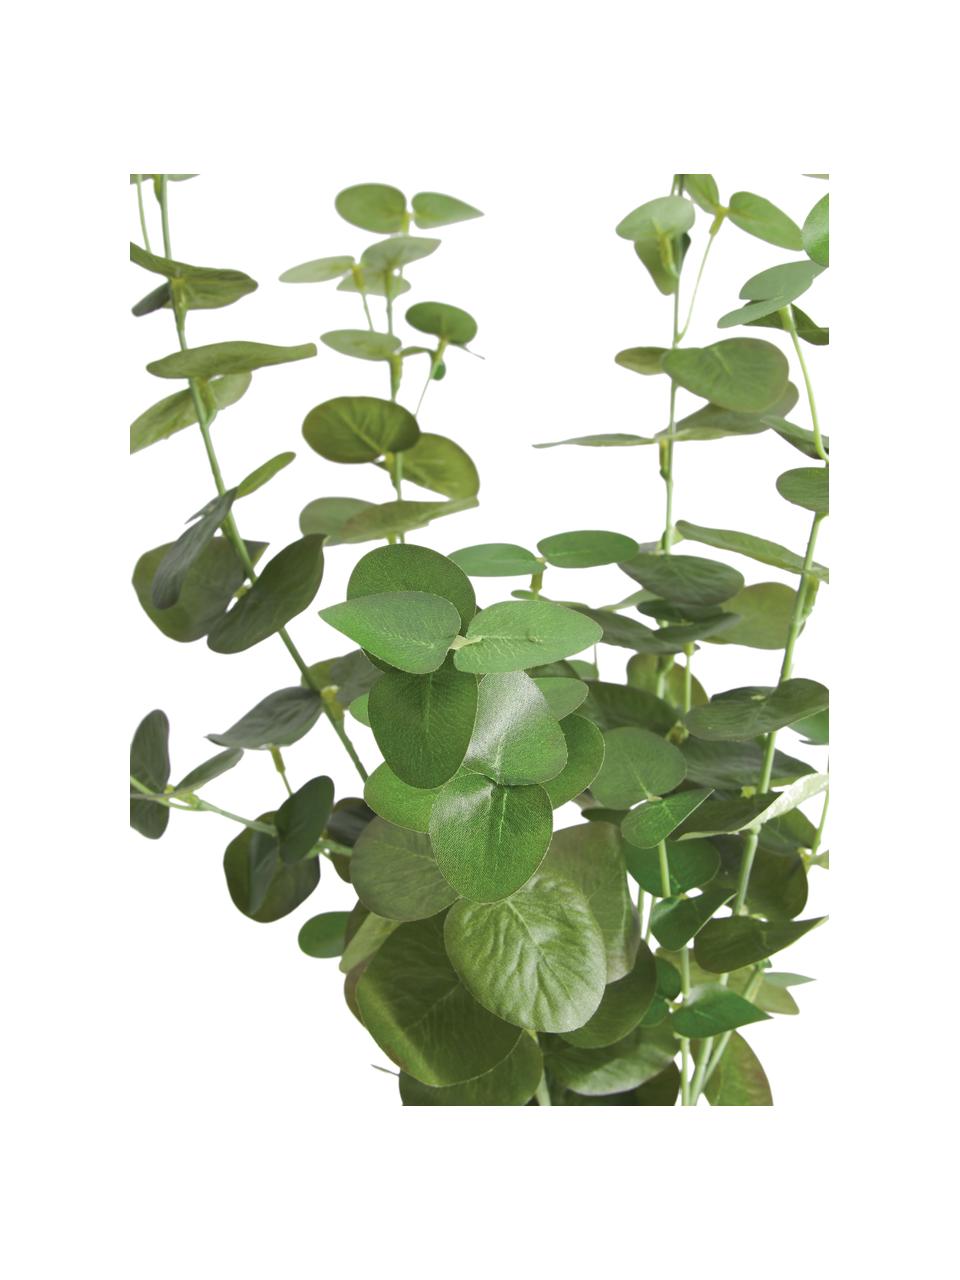 Planta artificial Eucalyptus, Plástico, Verde, negro, Ø 22 x Al 55